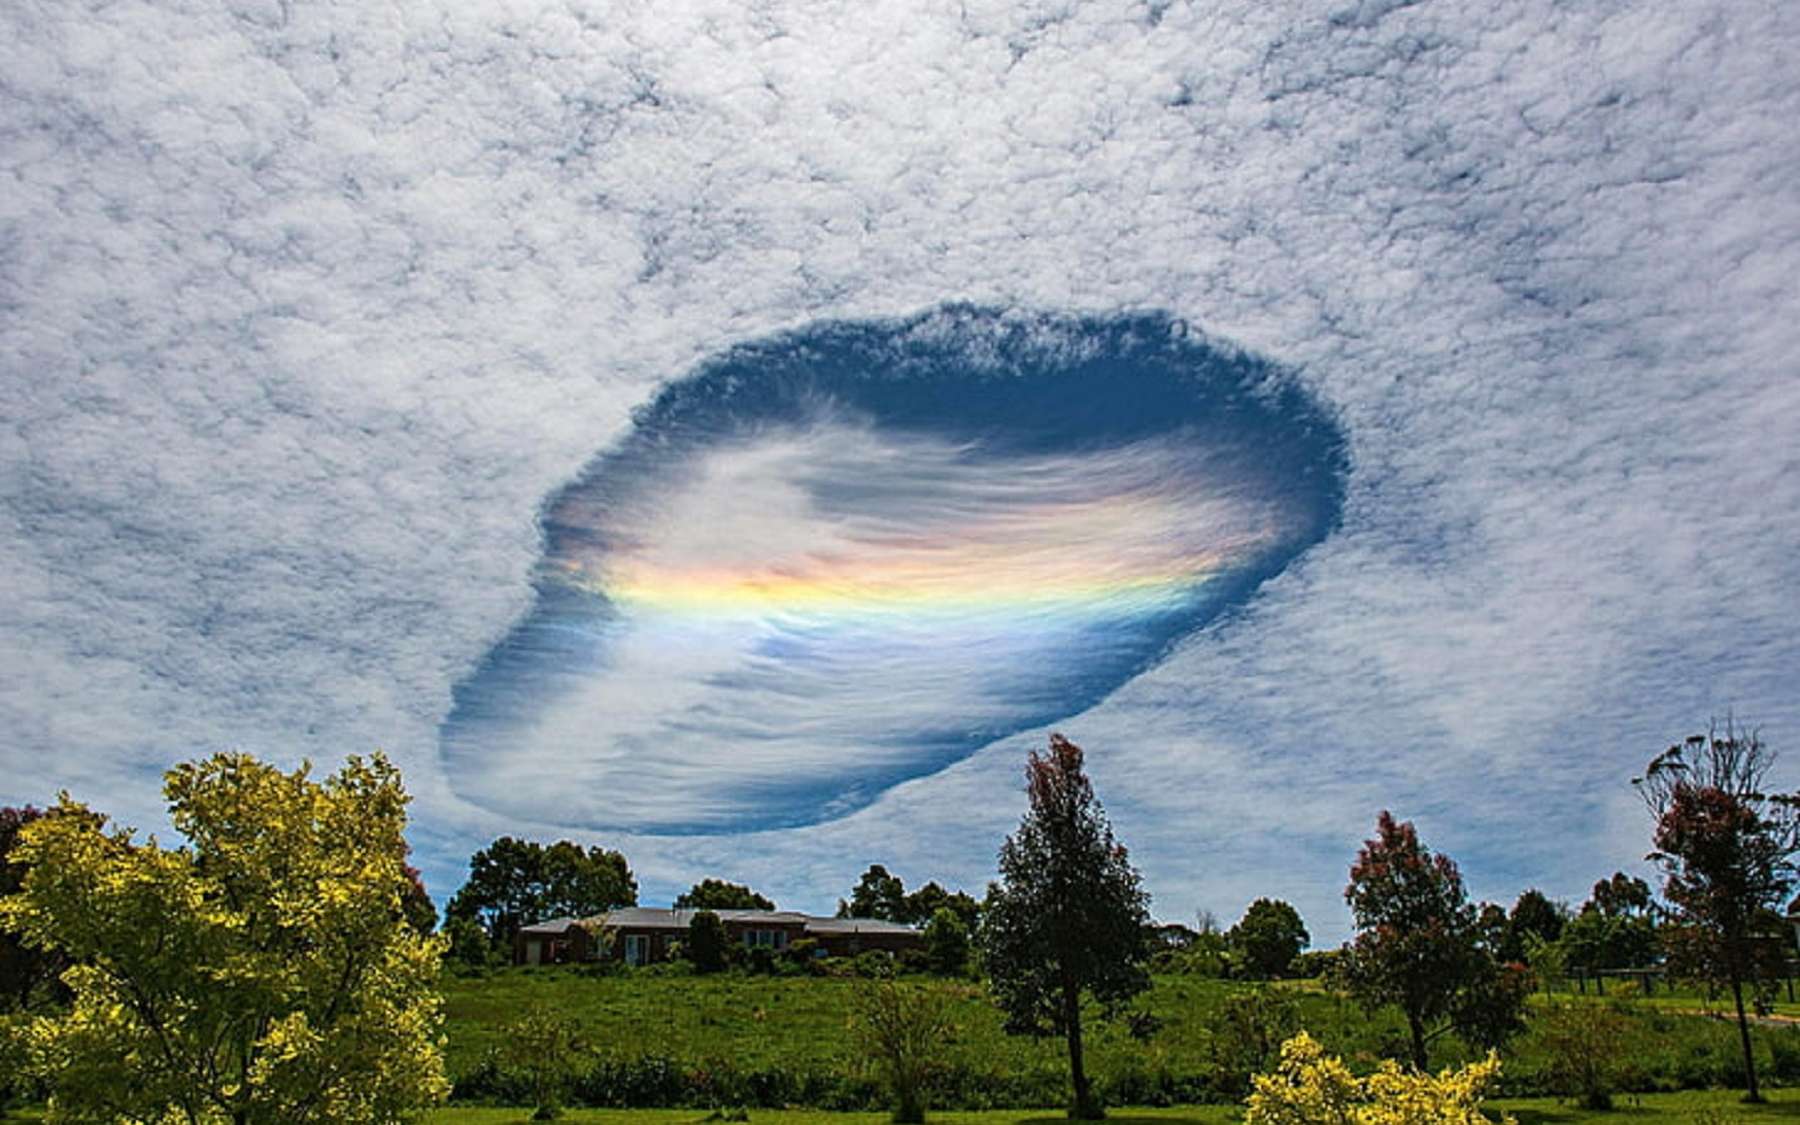 Impressionnant skypunch avec une irisation au milieu en Australie en 2014. © Kate Farrel Beadel